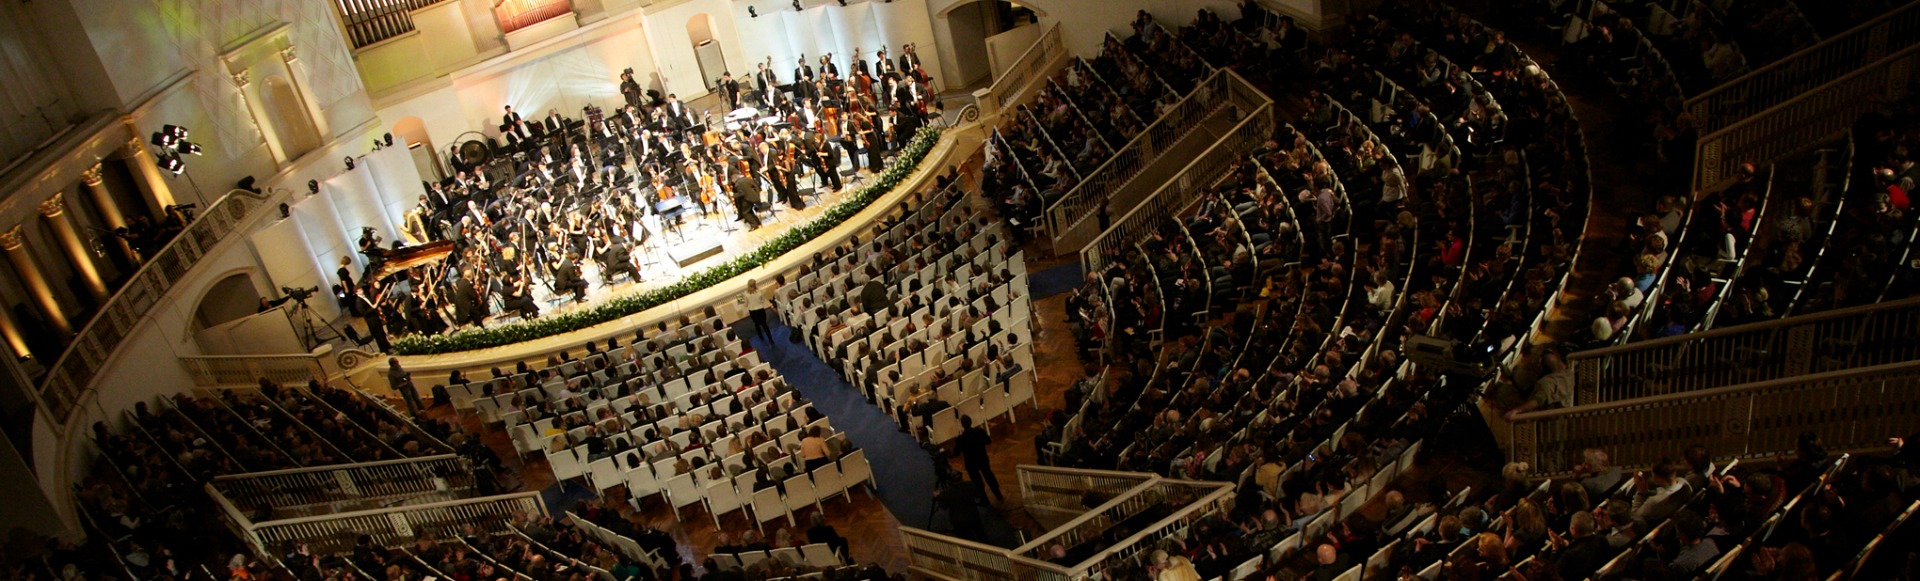 Билеты на концерты классической музыки в Москве